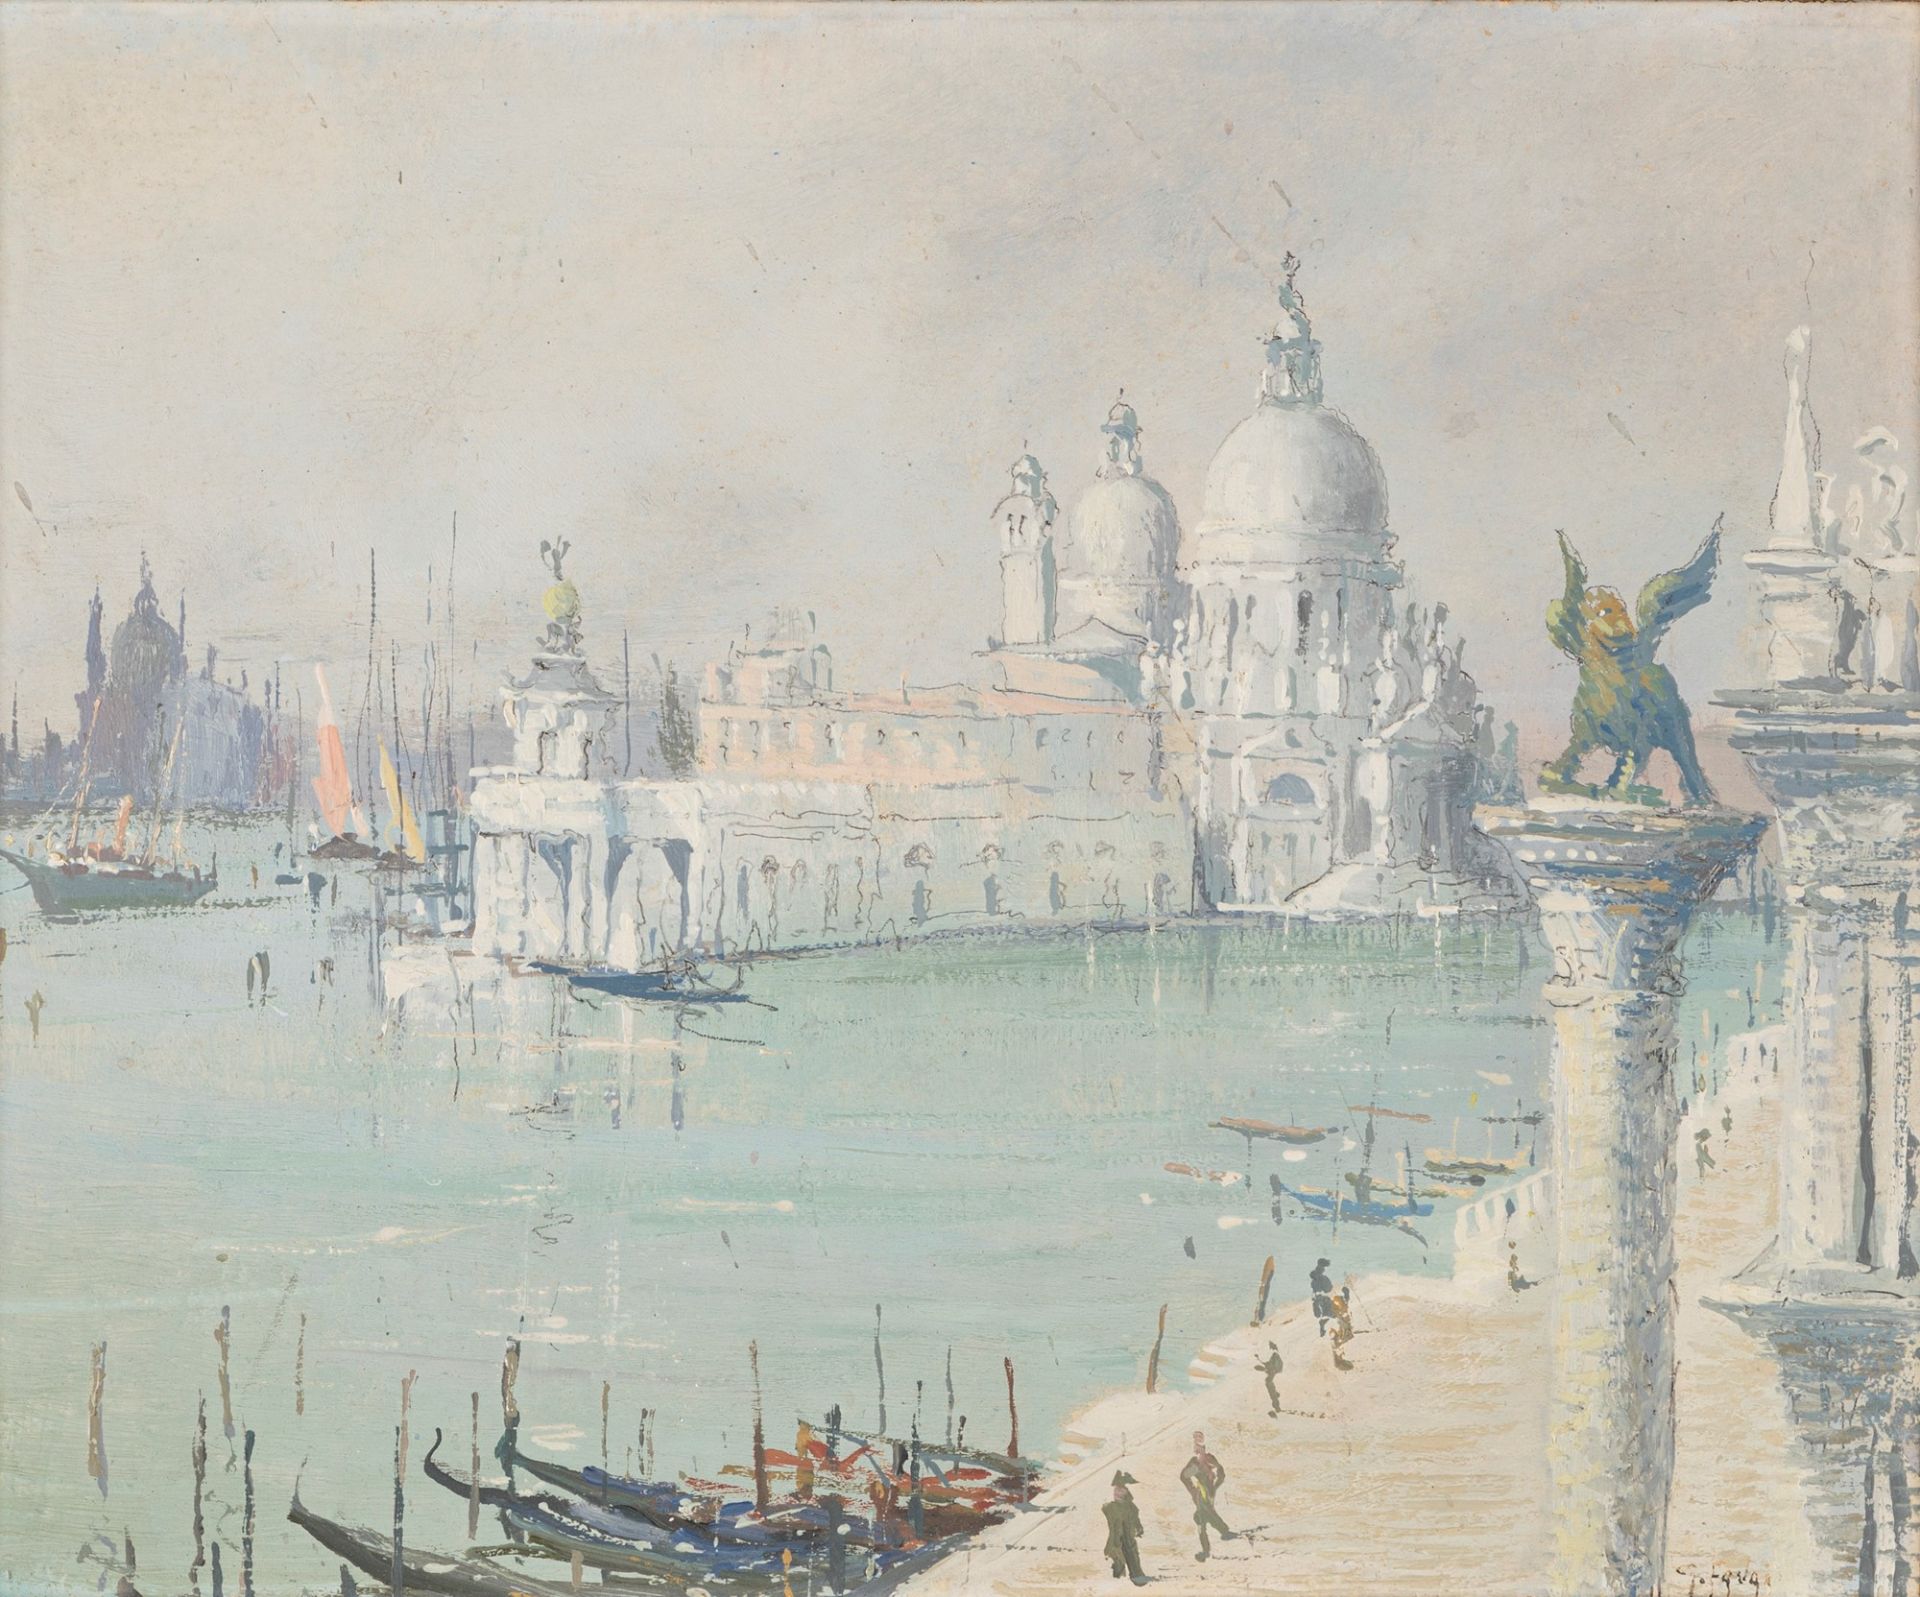 Gennaro Favai (Venezia 1879-1958) - Venice, Gray morning from Palazzo Ducale, 1941